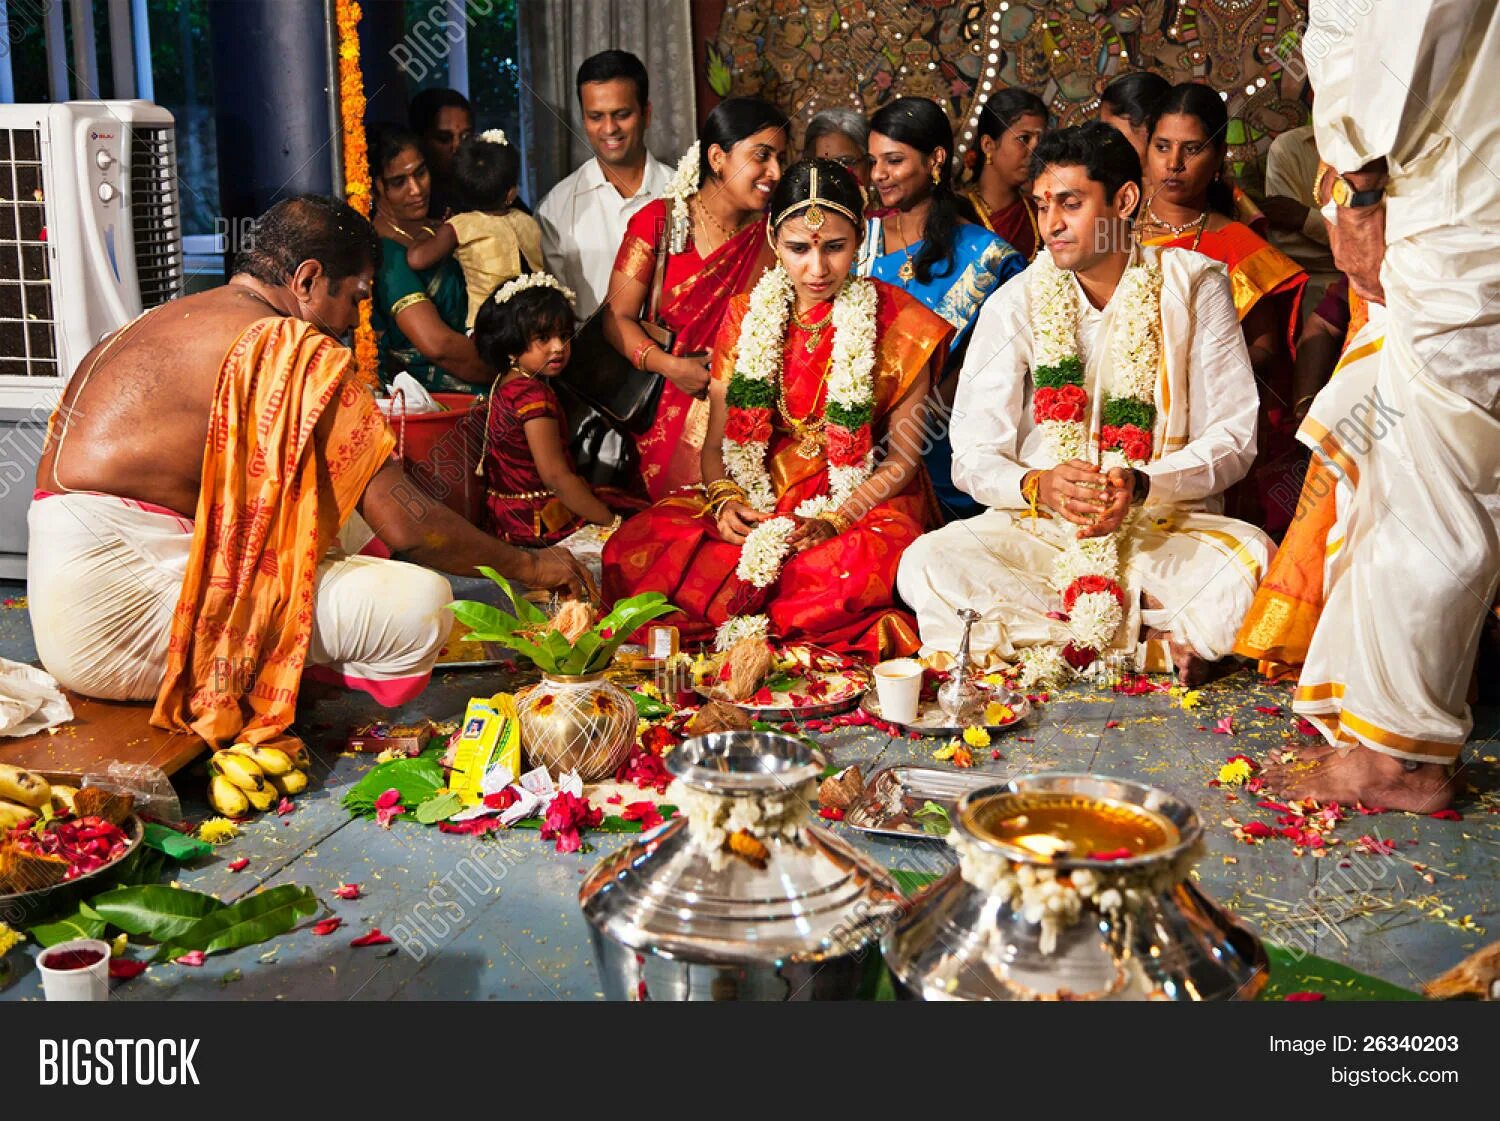 Этикет индии. Трапеза в Индии. Семейное застолье в Индии. Индийский этикет. Свадьба в древней Индии.